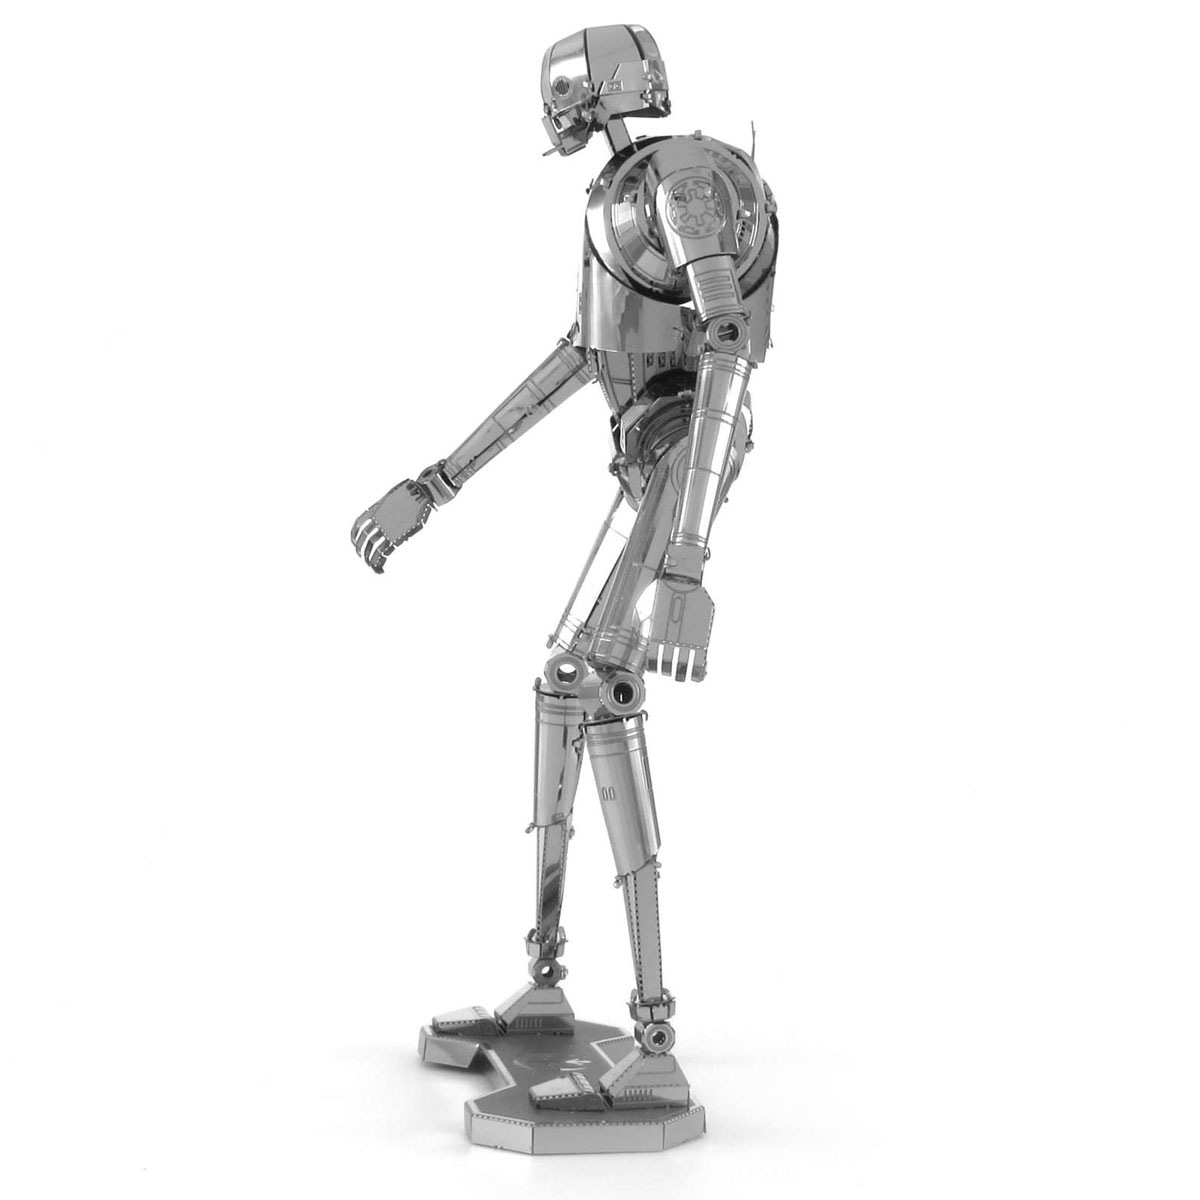 爱拼 全金属不锈钢DIY拼装模型3D免胶 星球大战K-2SO机器人 冲冠